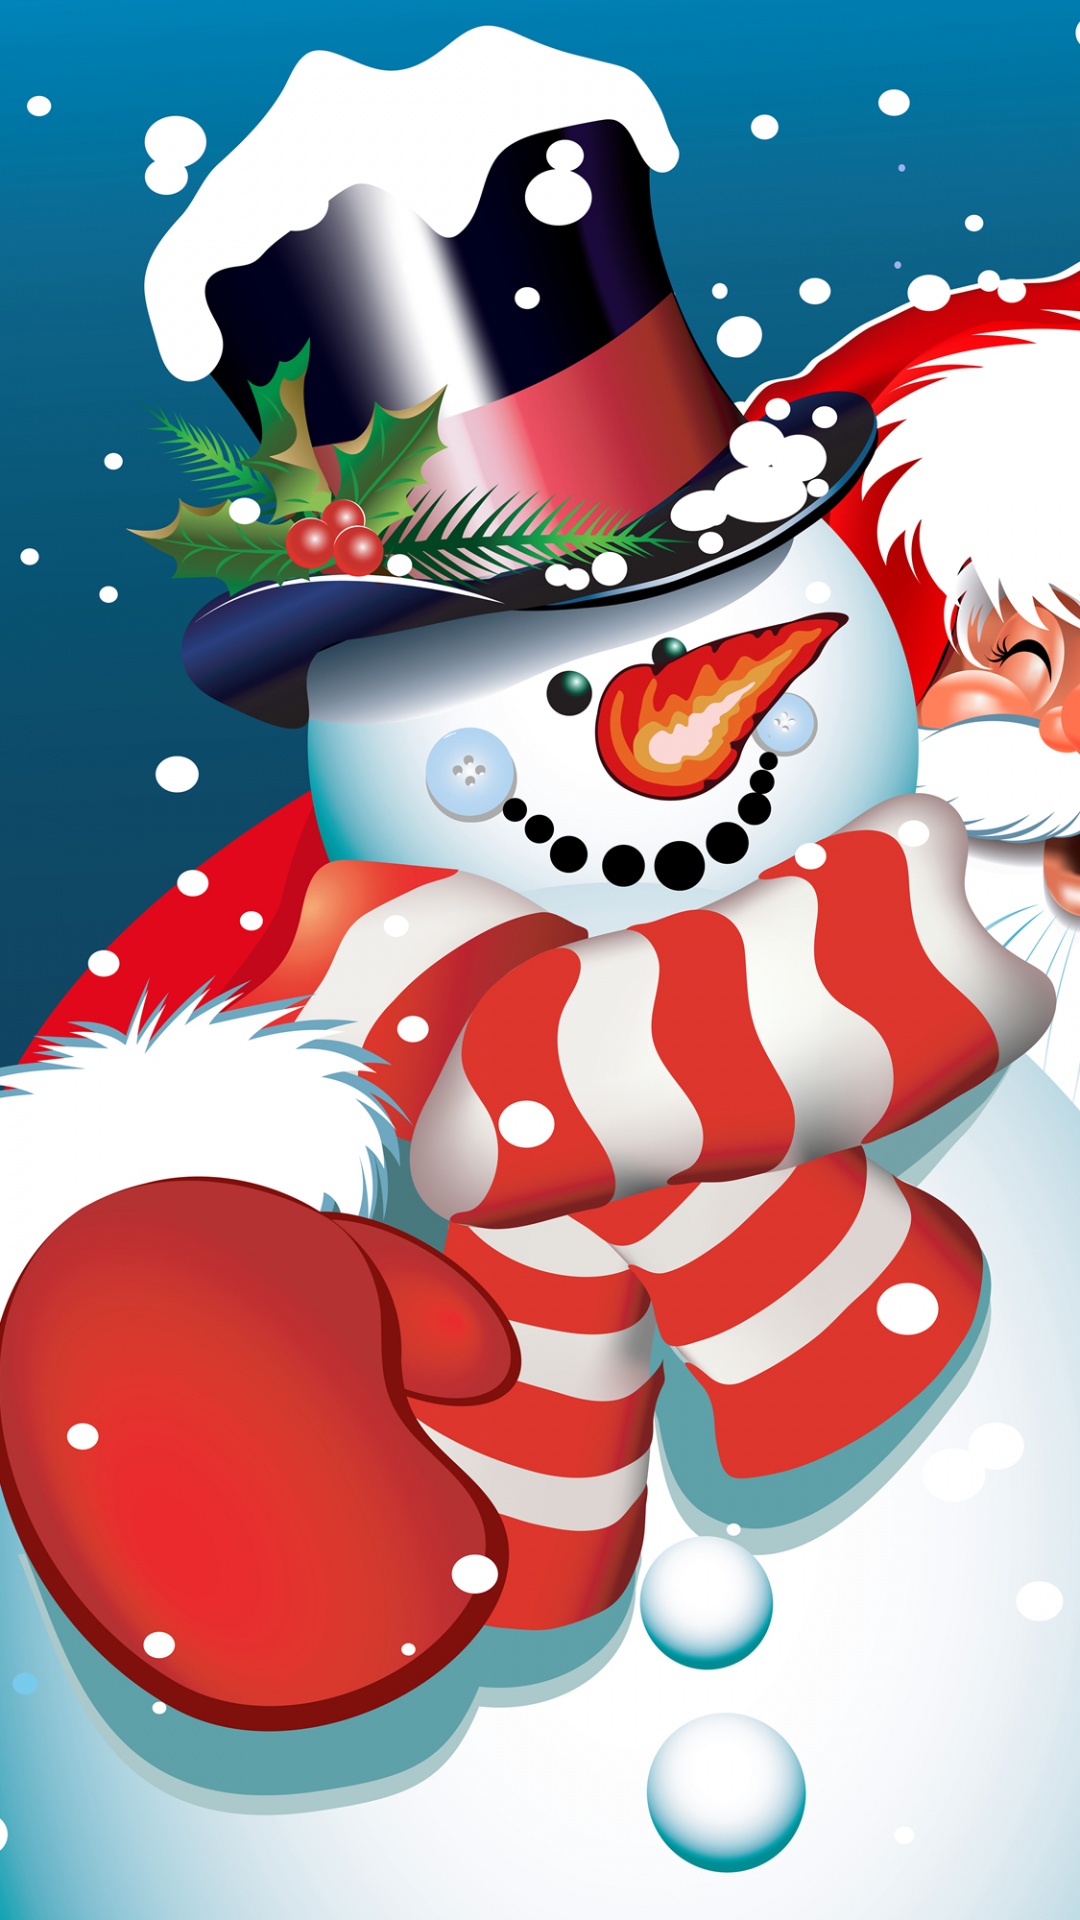 Weihnachtsmann, Weihnachten, Schneemann, Cartoon, Illustration. Wallpaper in 1080x1920 Resolution